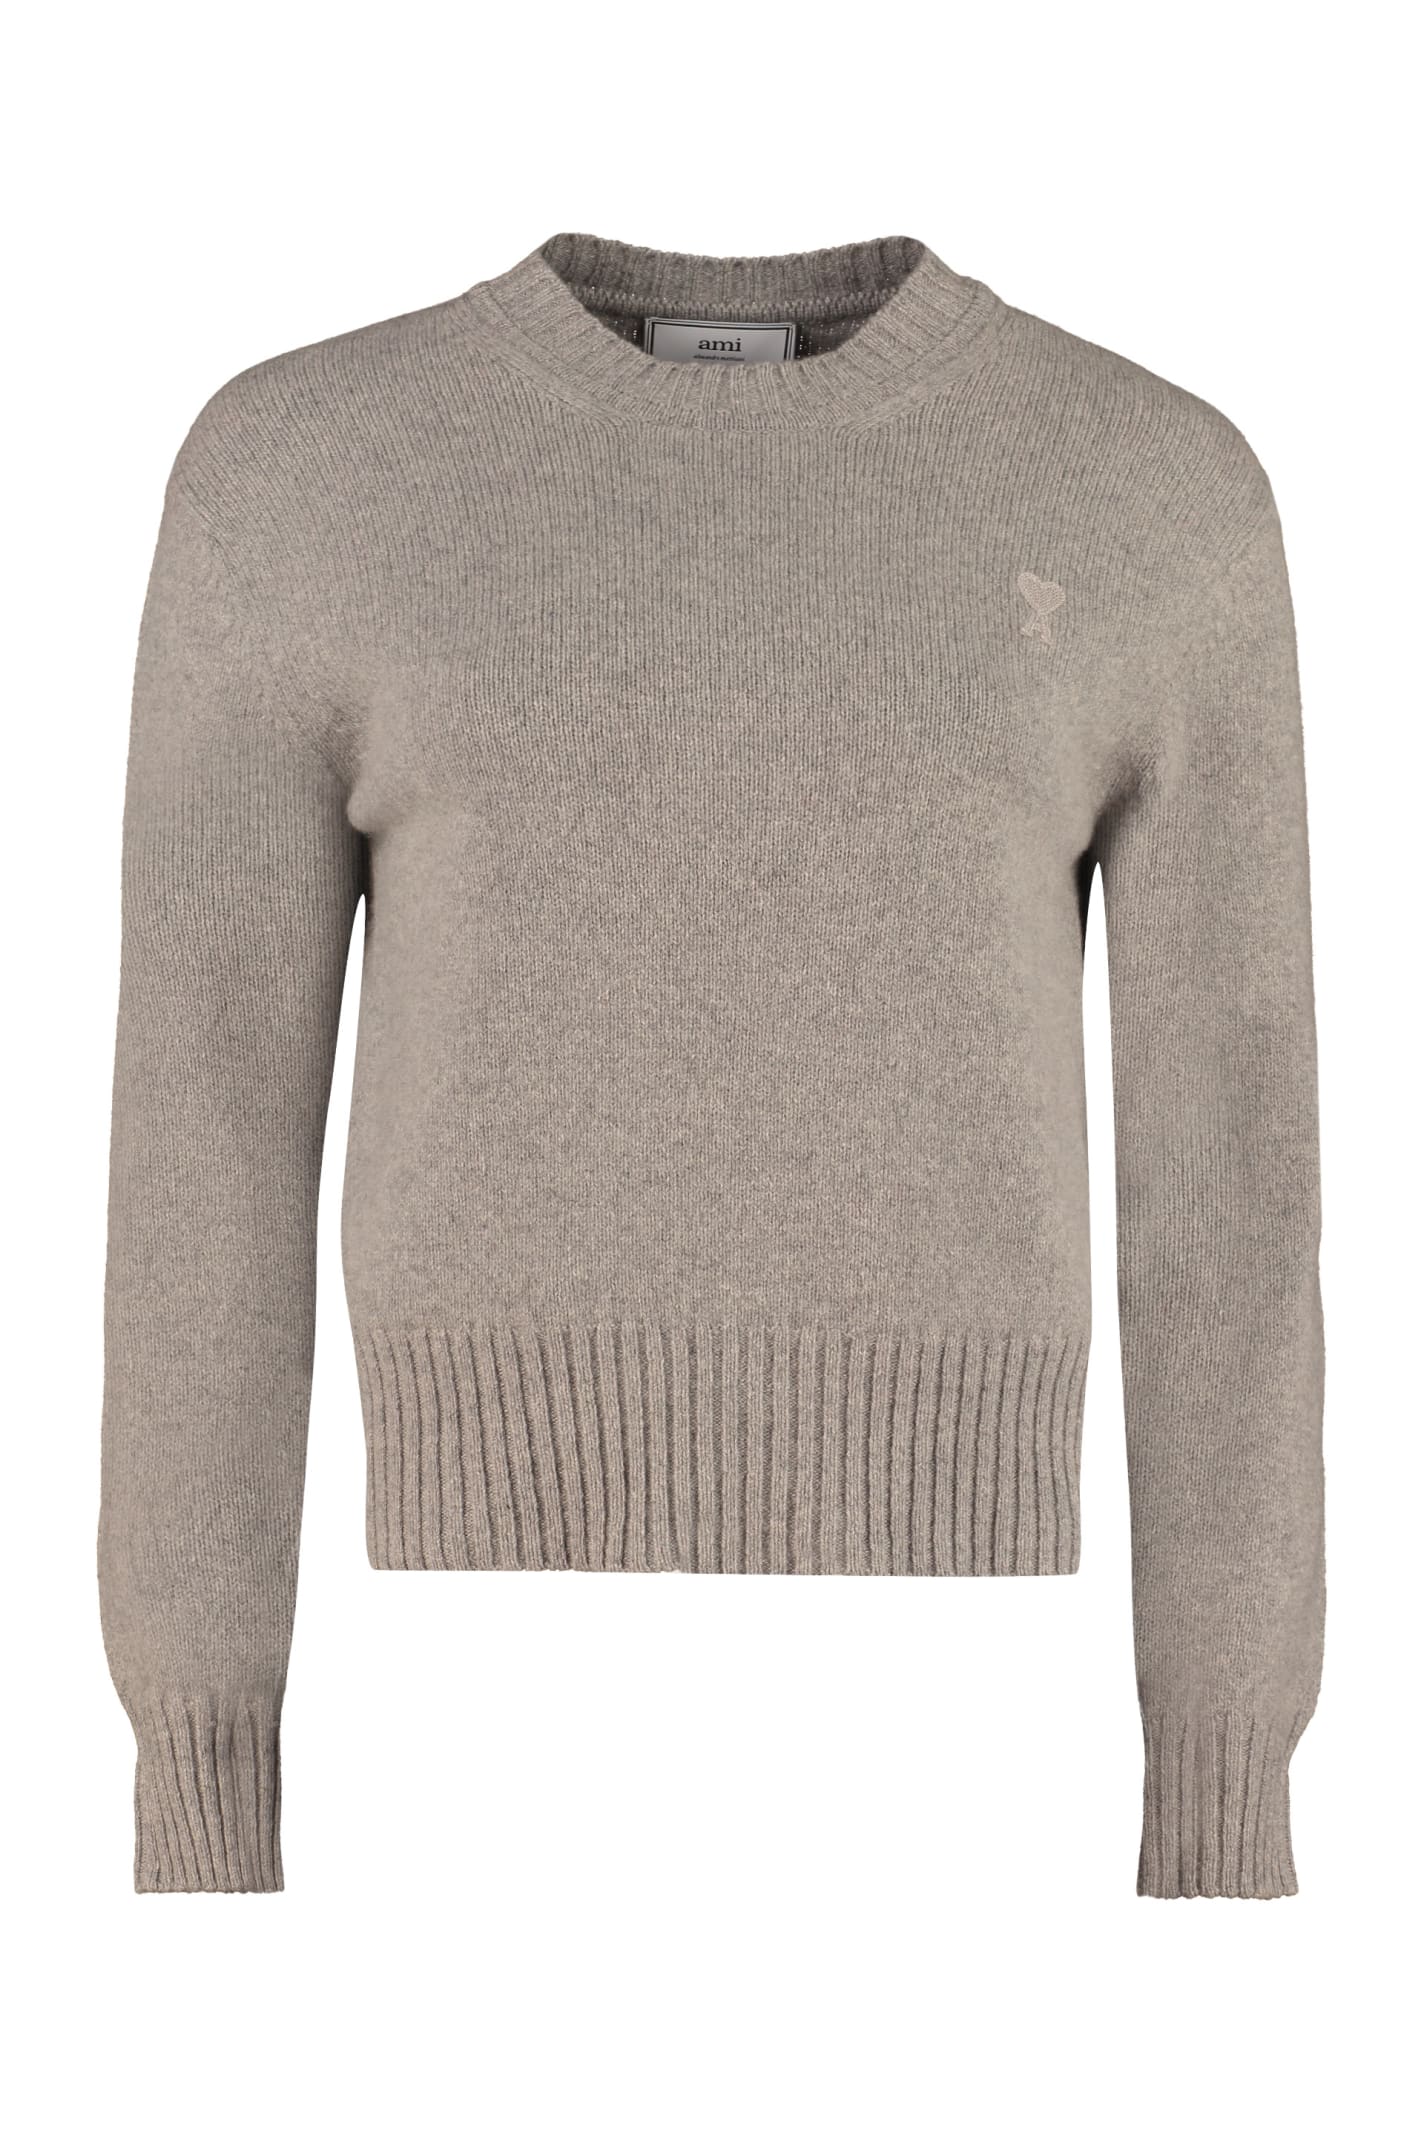 Ami Alexandre Mattiussi Crew-neck Cashmere Sweater In Grey